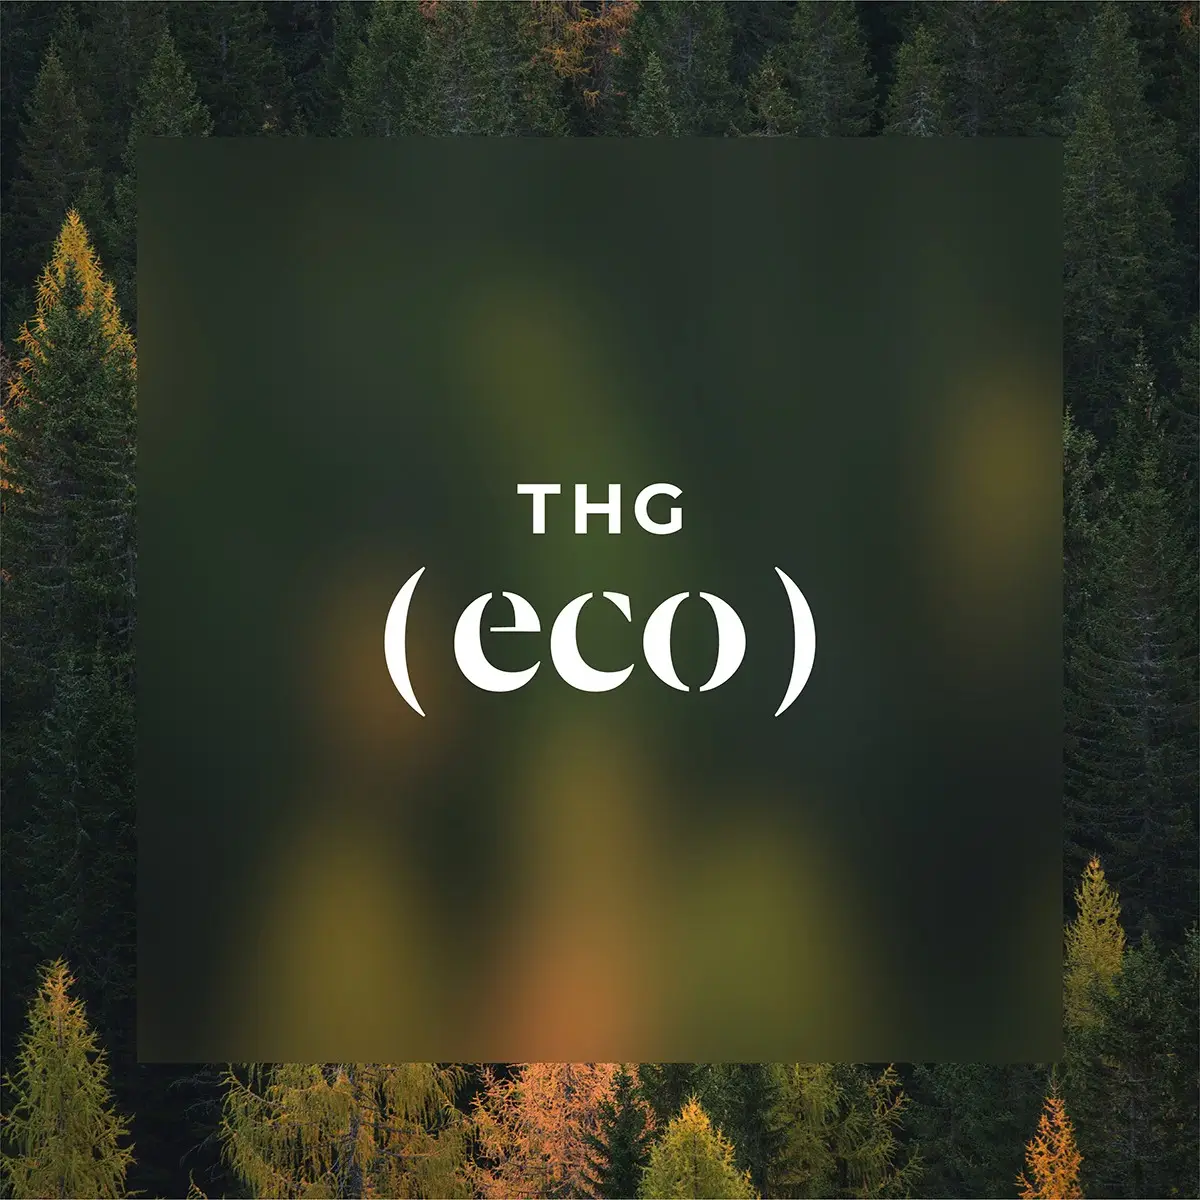 THG -  brytr uk - sustainable marketing agency London - green, ethical and eco marketing